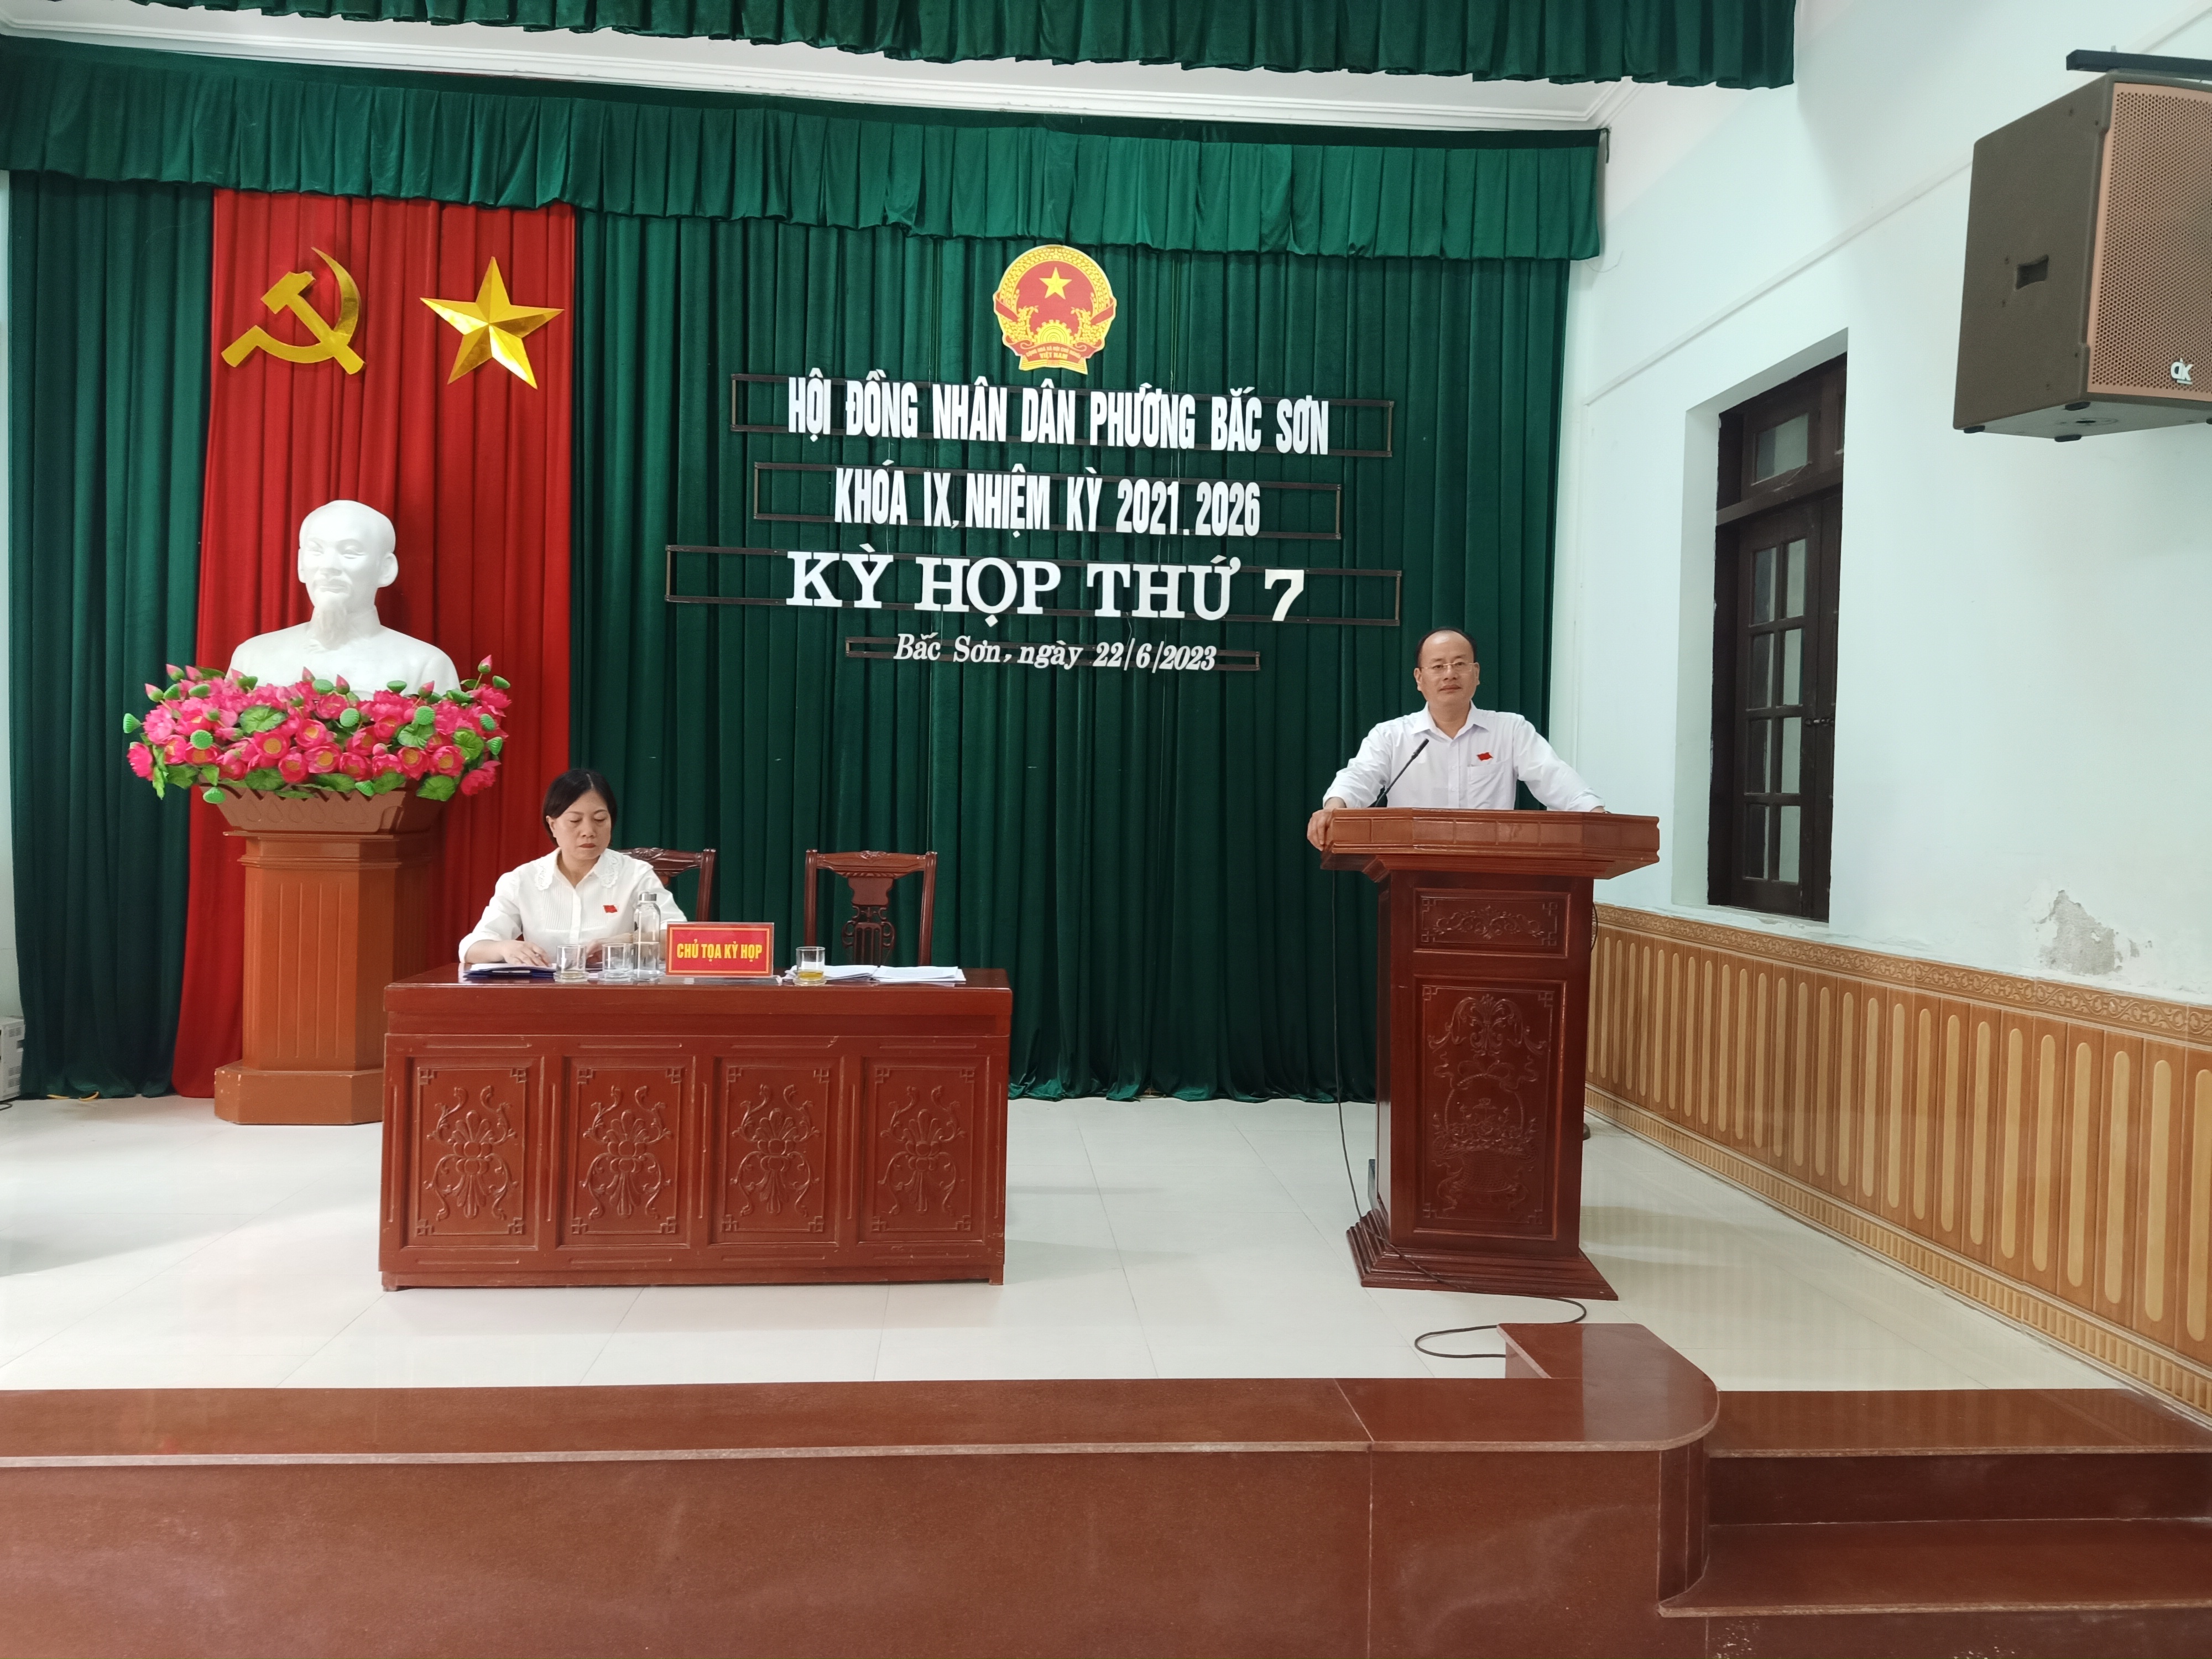 HĐND phường Bắc Sơn tổ chức kỳ họp thứ 7 HĐND phường khóa IX, nhiệm kỳ 2021-2026